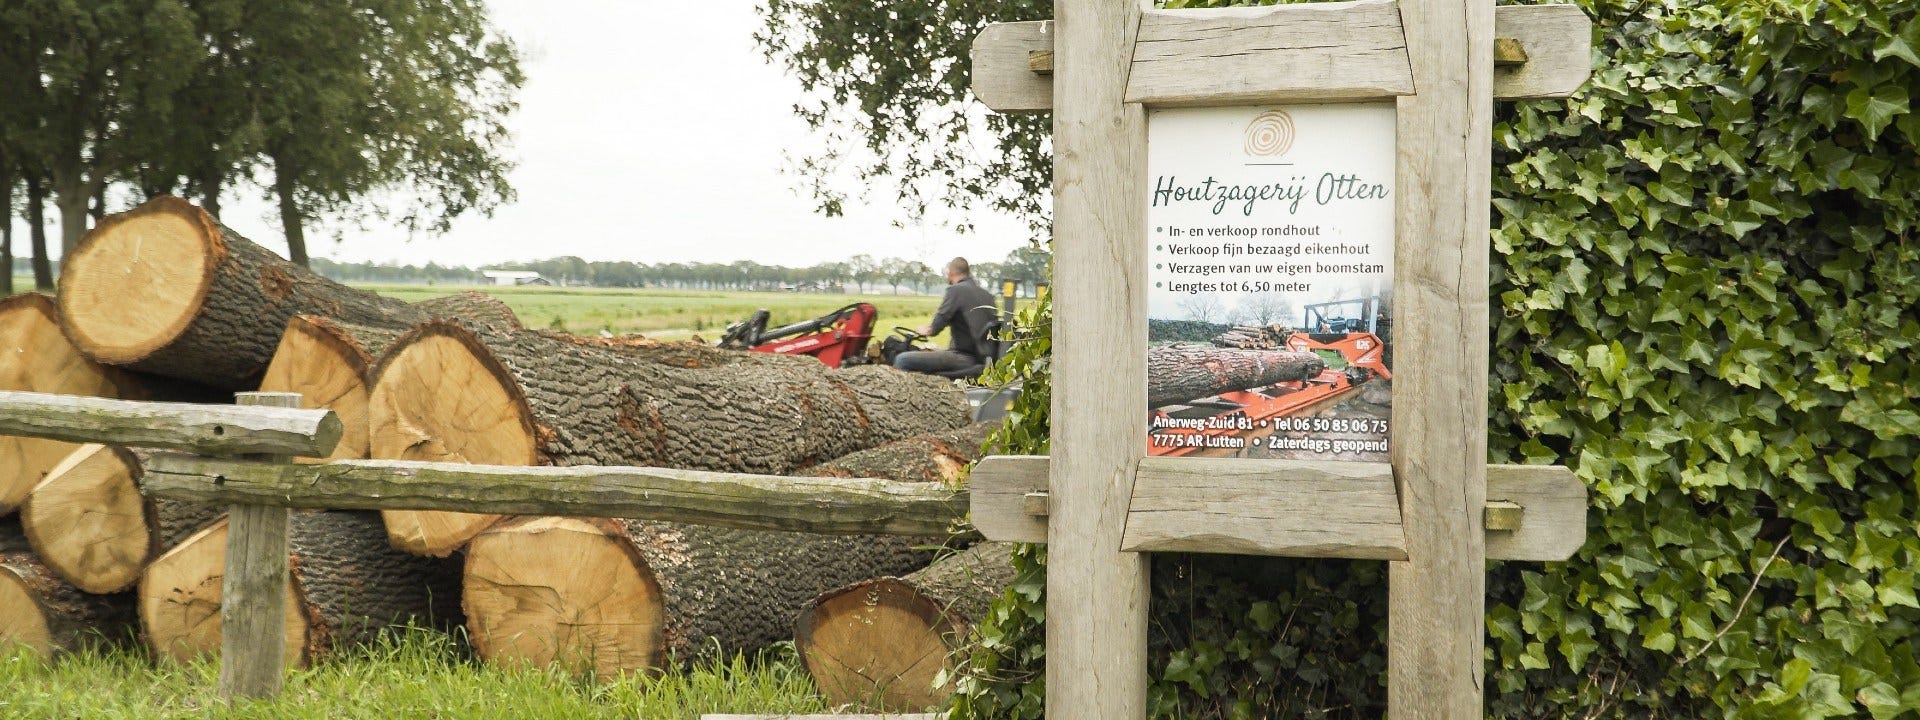 Sågning av ek med Wood-Mizer LX50 i Nederländerna